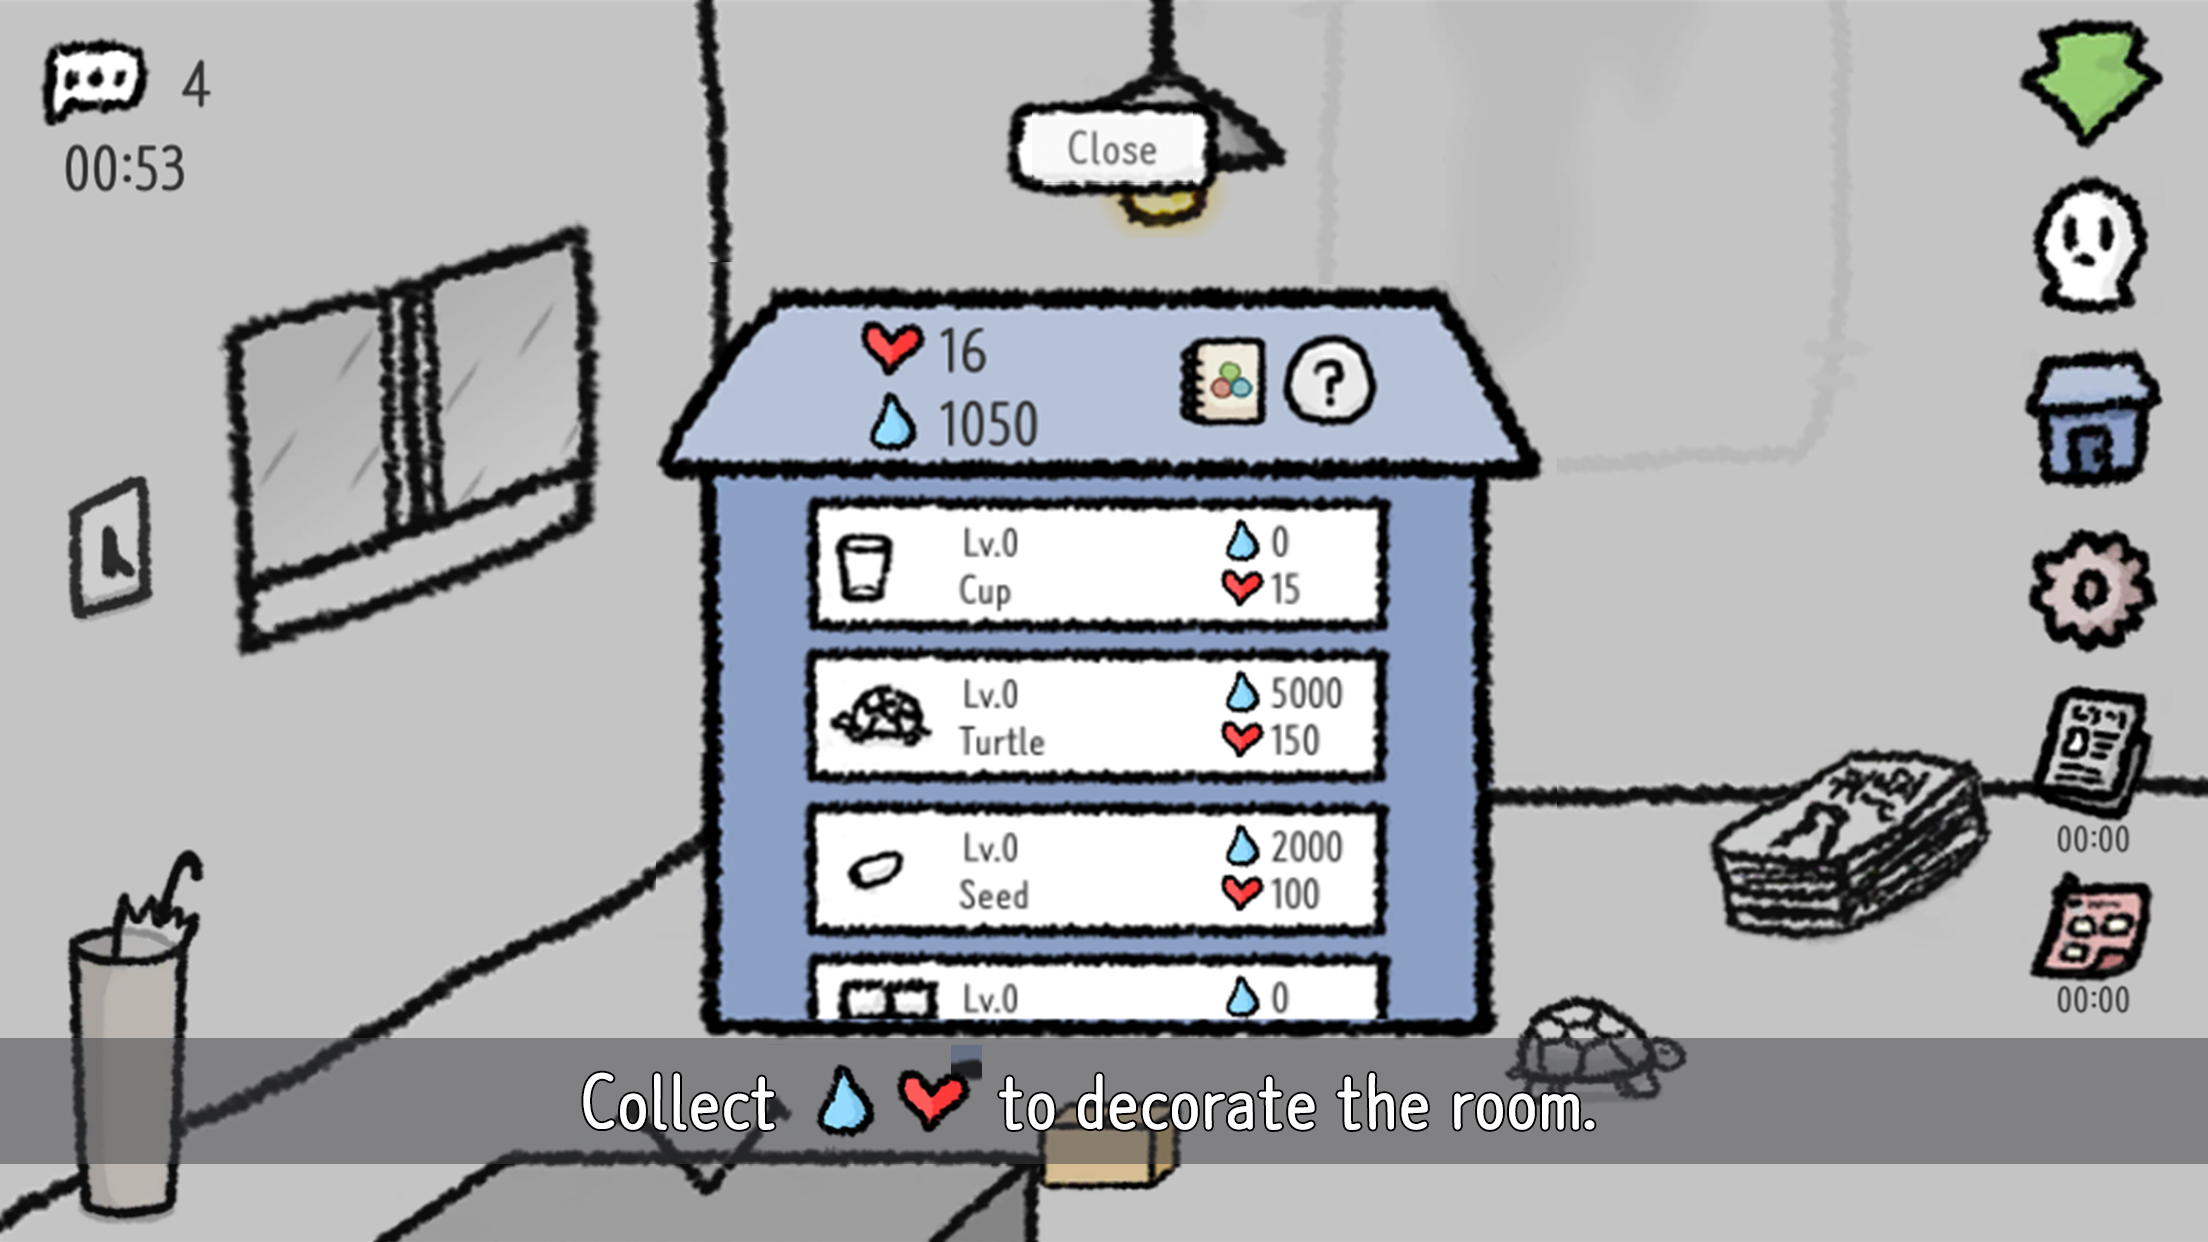 Rainy single room screenshot game